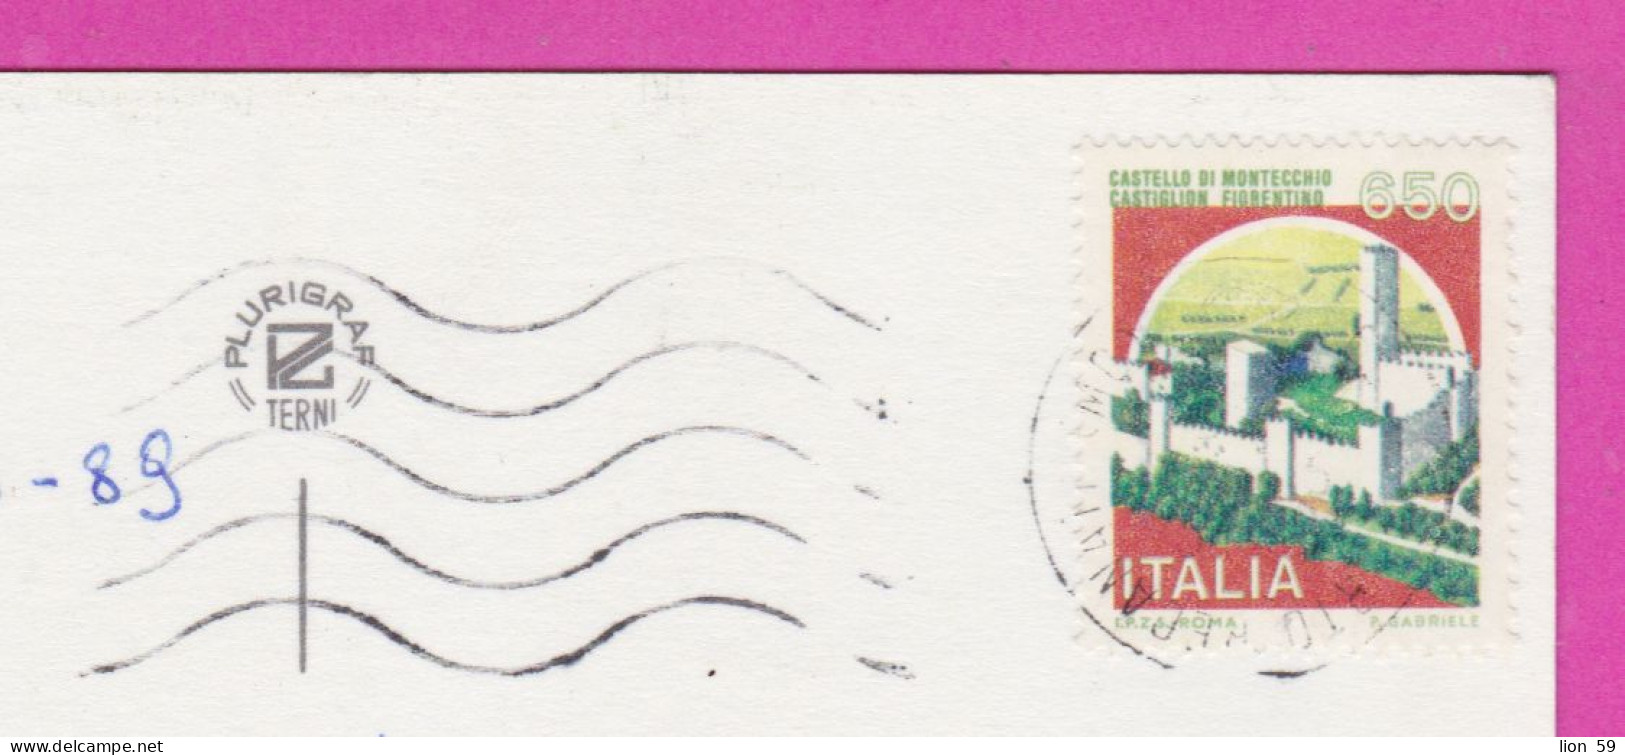 293891 / Italy - Rivera Del CONERO PC 1989 Porto Recanati USED 650 L Castello Di Montecchio, Castiglion Fiorentino - 1981-90: Marcofilie